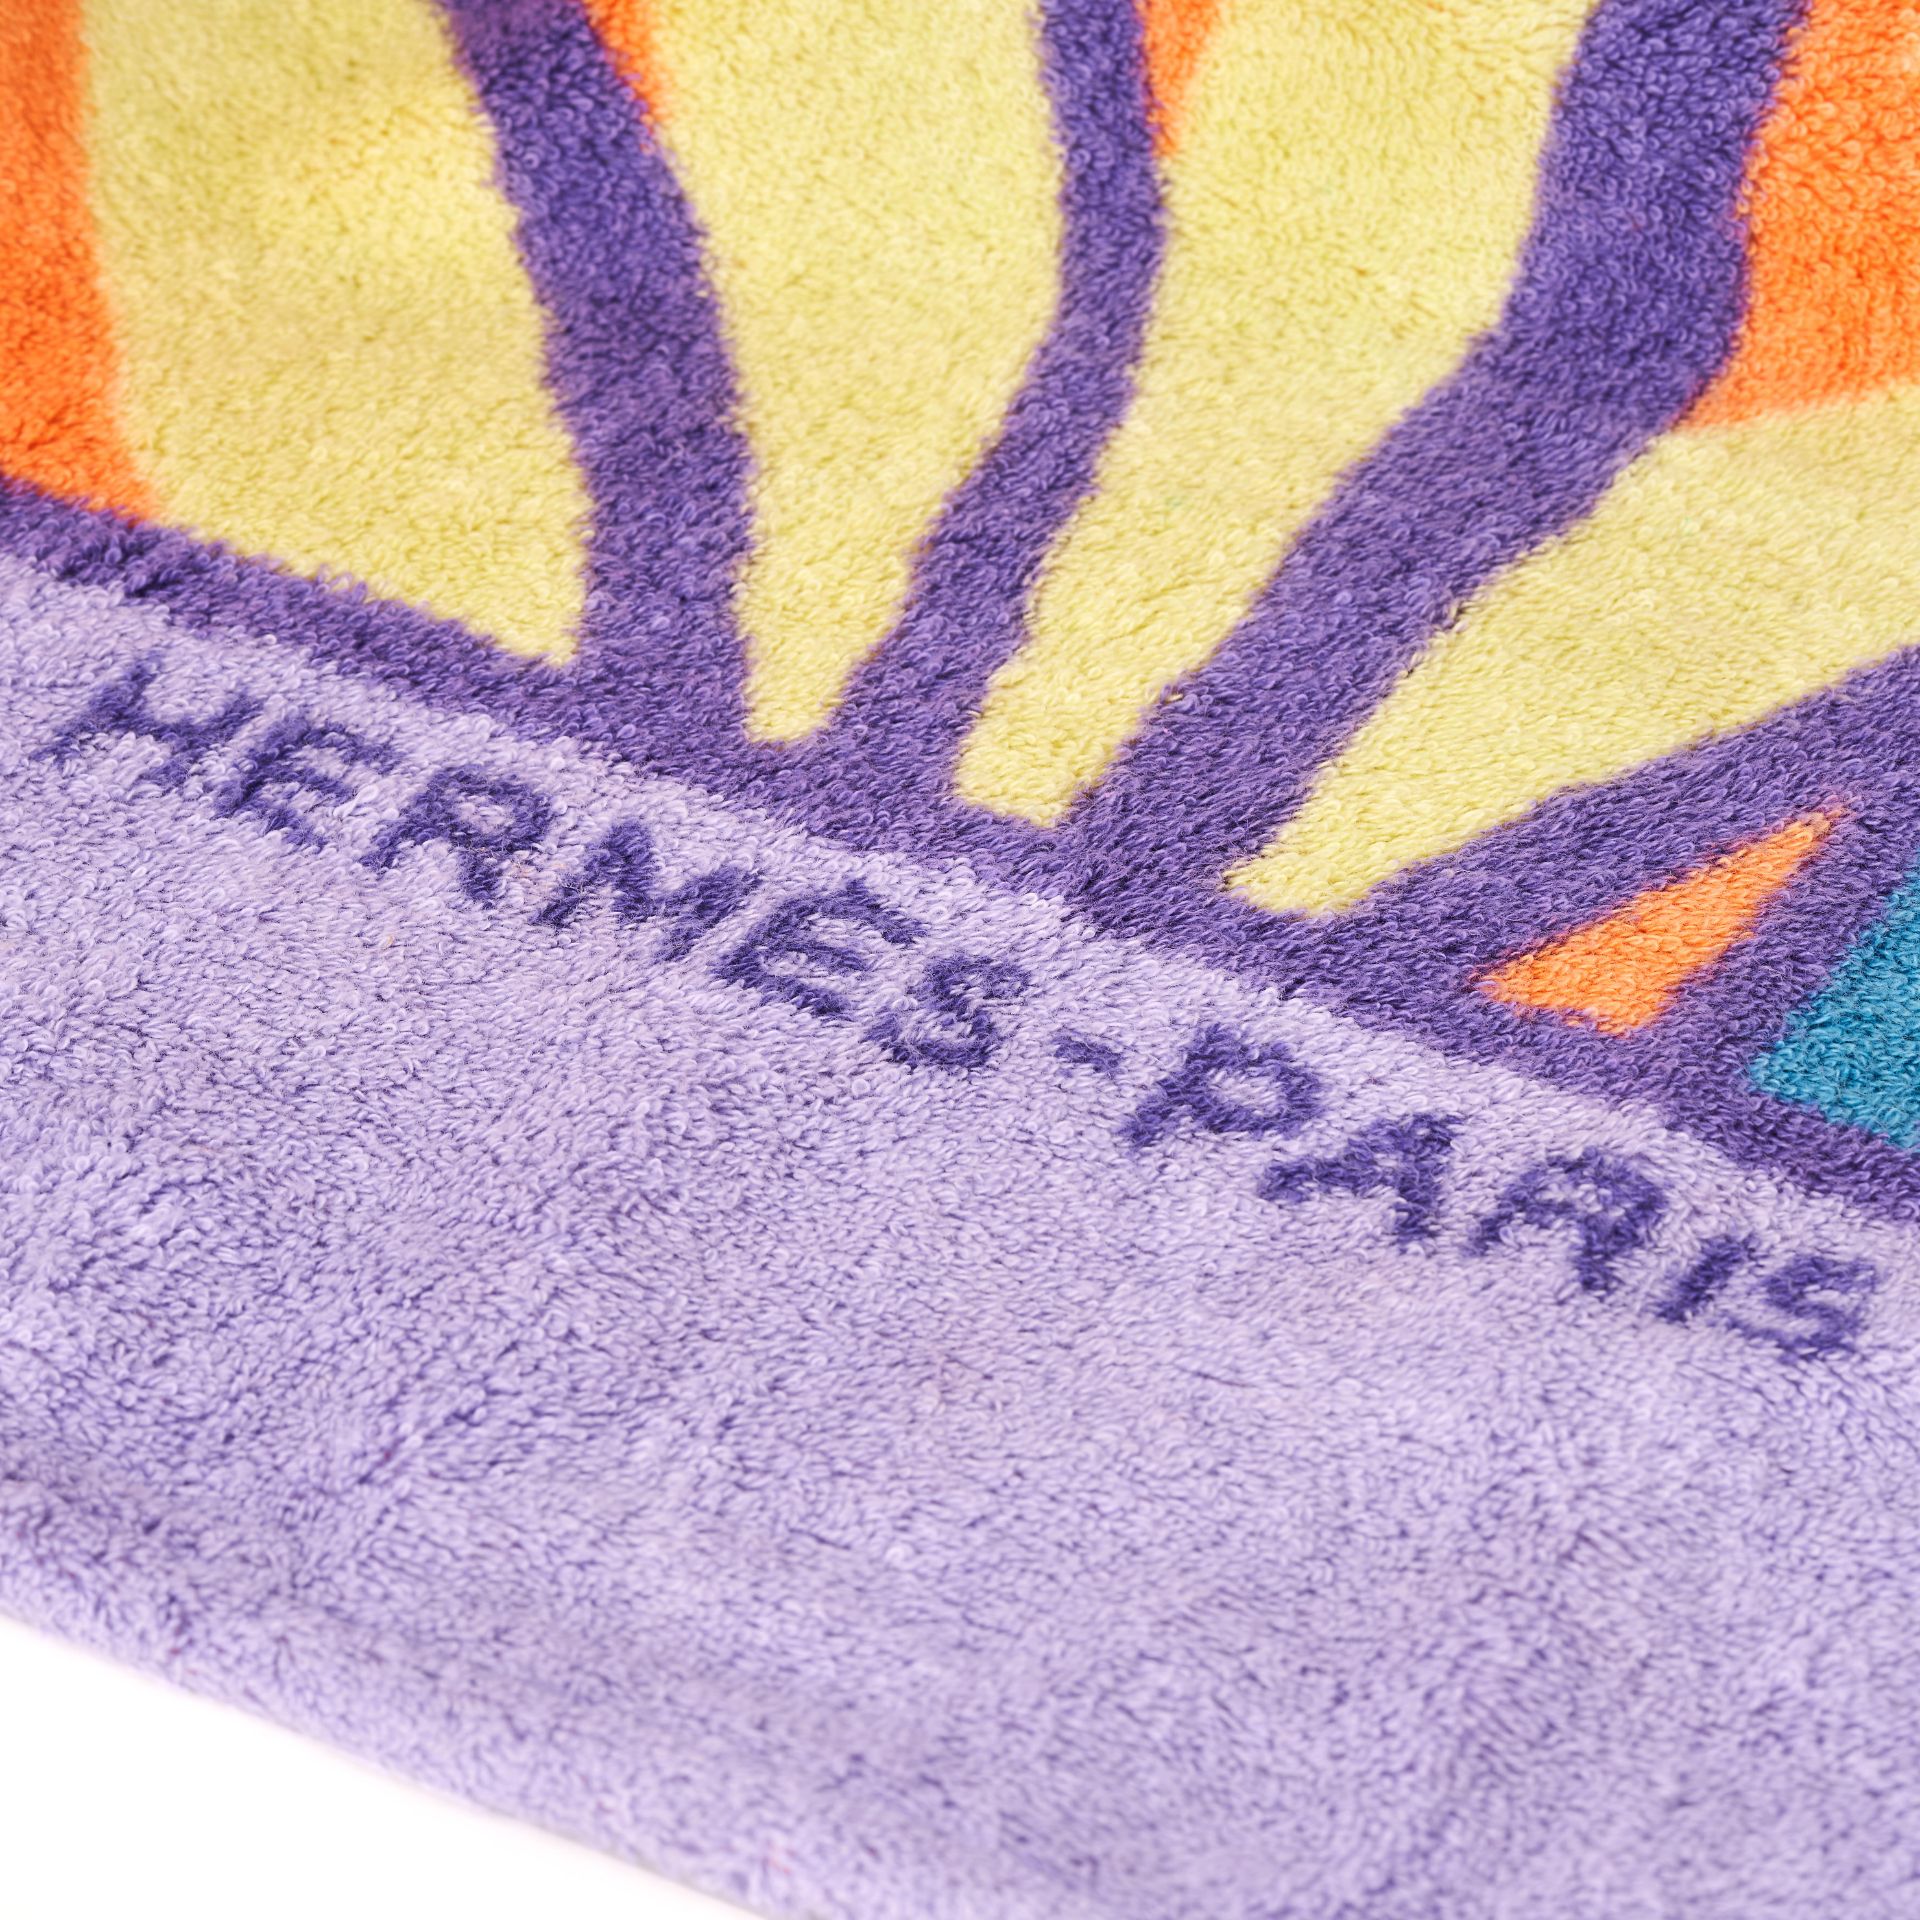 HERMÈS PALM TREE BEACH TOWEL 150cm long, 90cm wide. Terry cloth multicolour (purple, orange and ... - Bild 3 aus 3